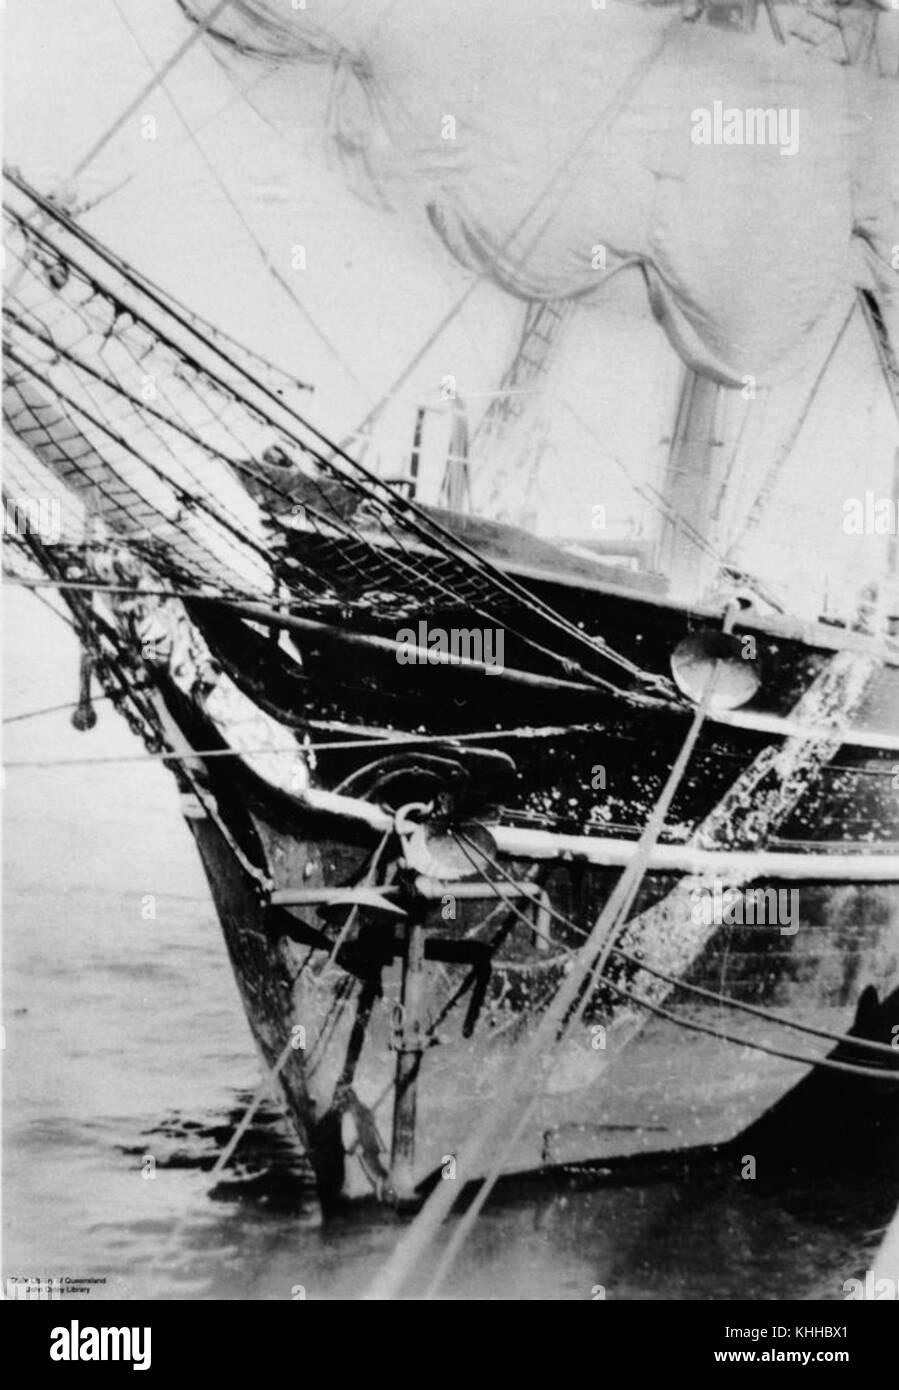 1 140231 Discovery (nave) visualizzato nella parte anteriore che mostra la prua, Polena e ancoraggio Foto Stock